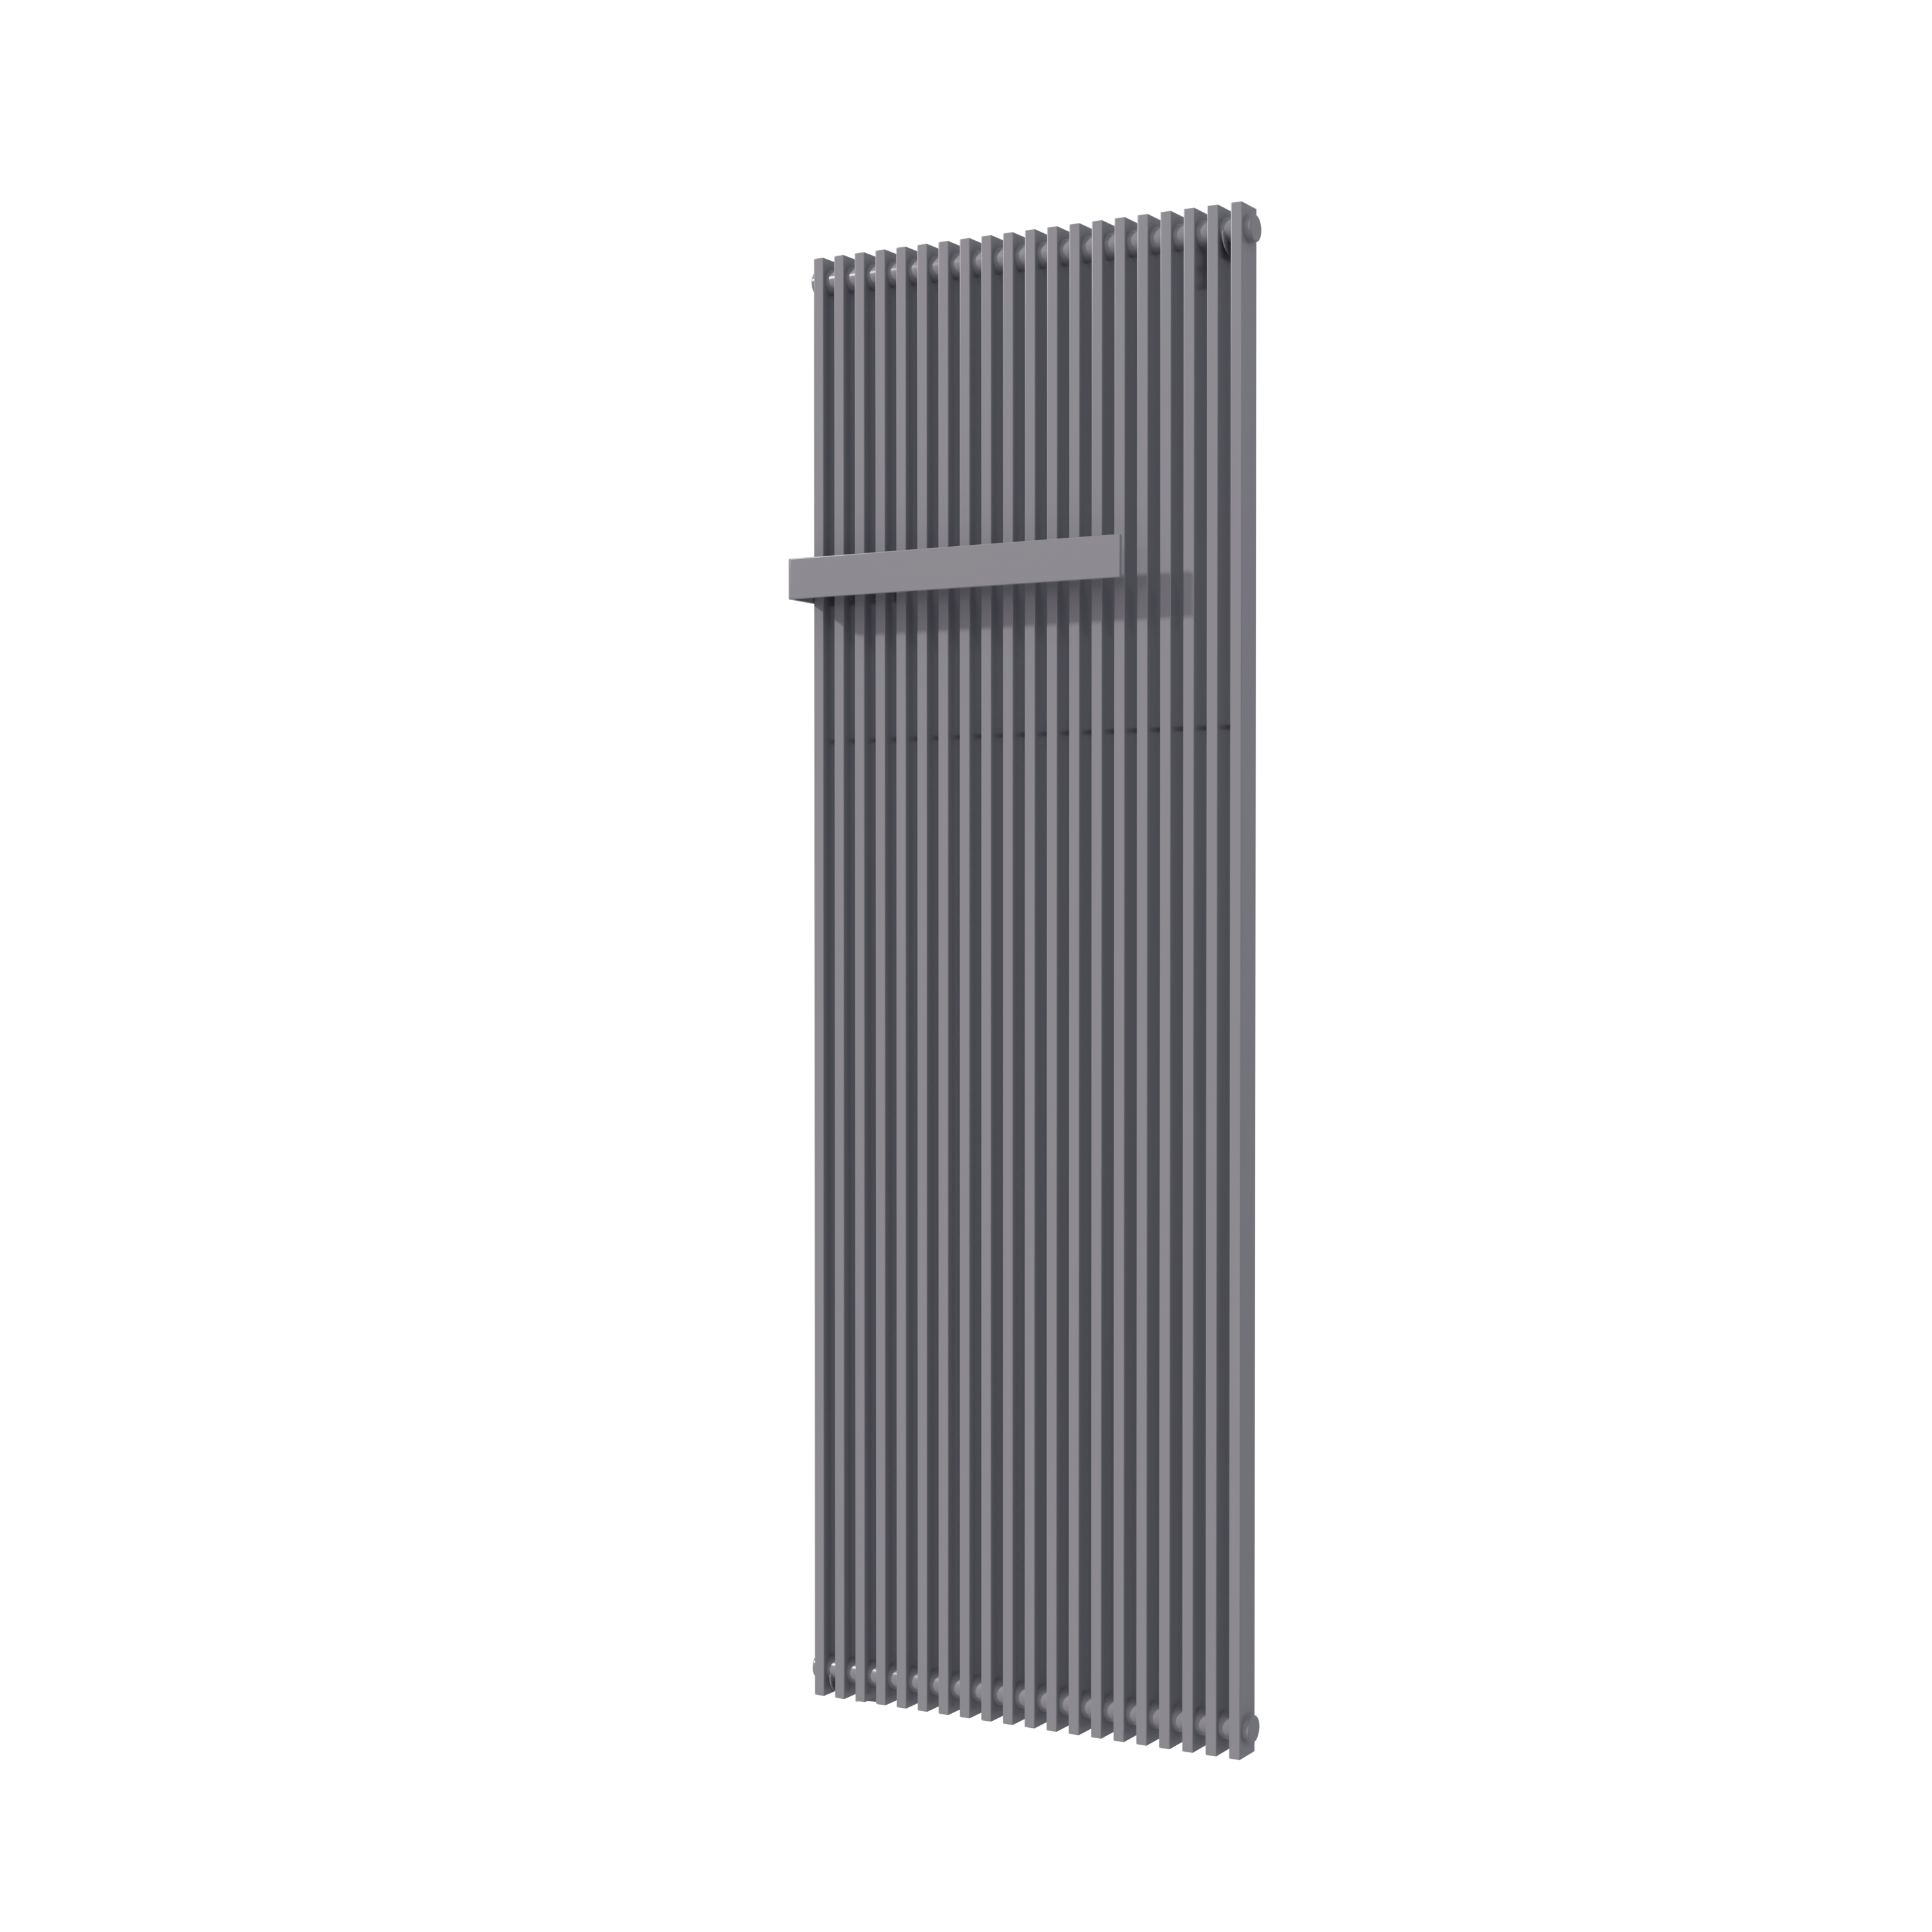 Vipera Corrason enkele badkamerradiator 60 x 180 cm centrale verwarming antraciet grijs zijaansluiting 2,059W